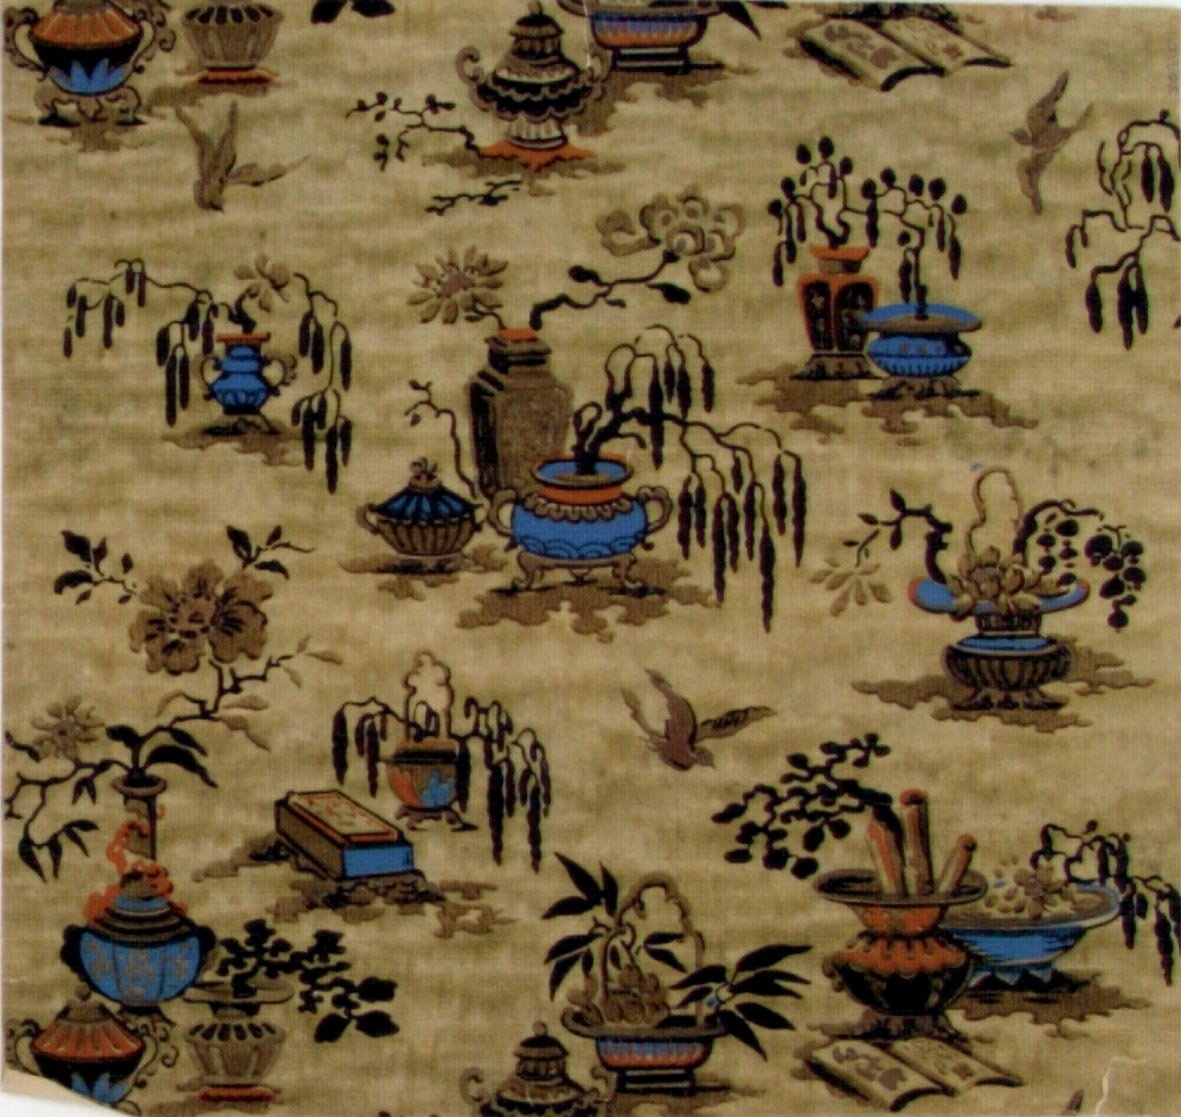 Kinesiska föremål och växter i diagonalupprepning. Tryck i svart, brunt, beige, orange och ljusblått på en beigemelerad bakgrund.